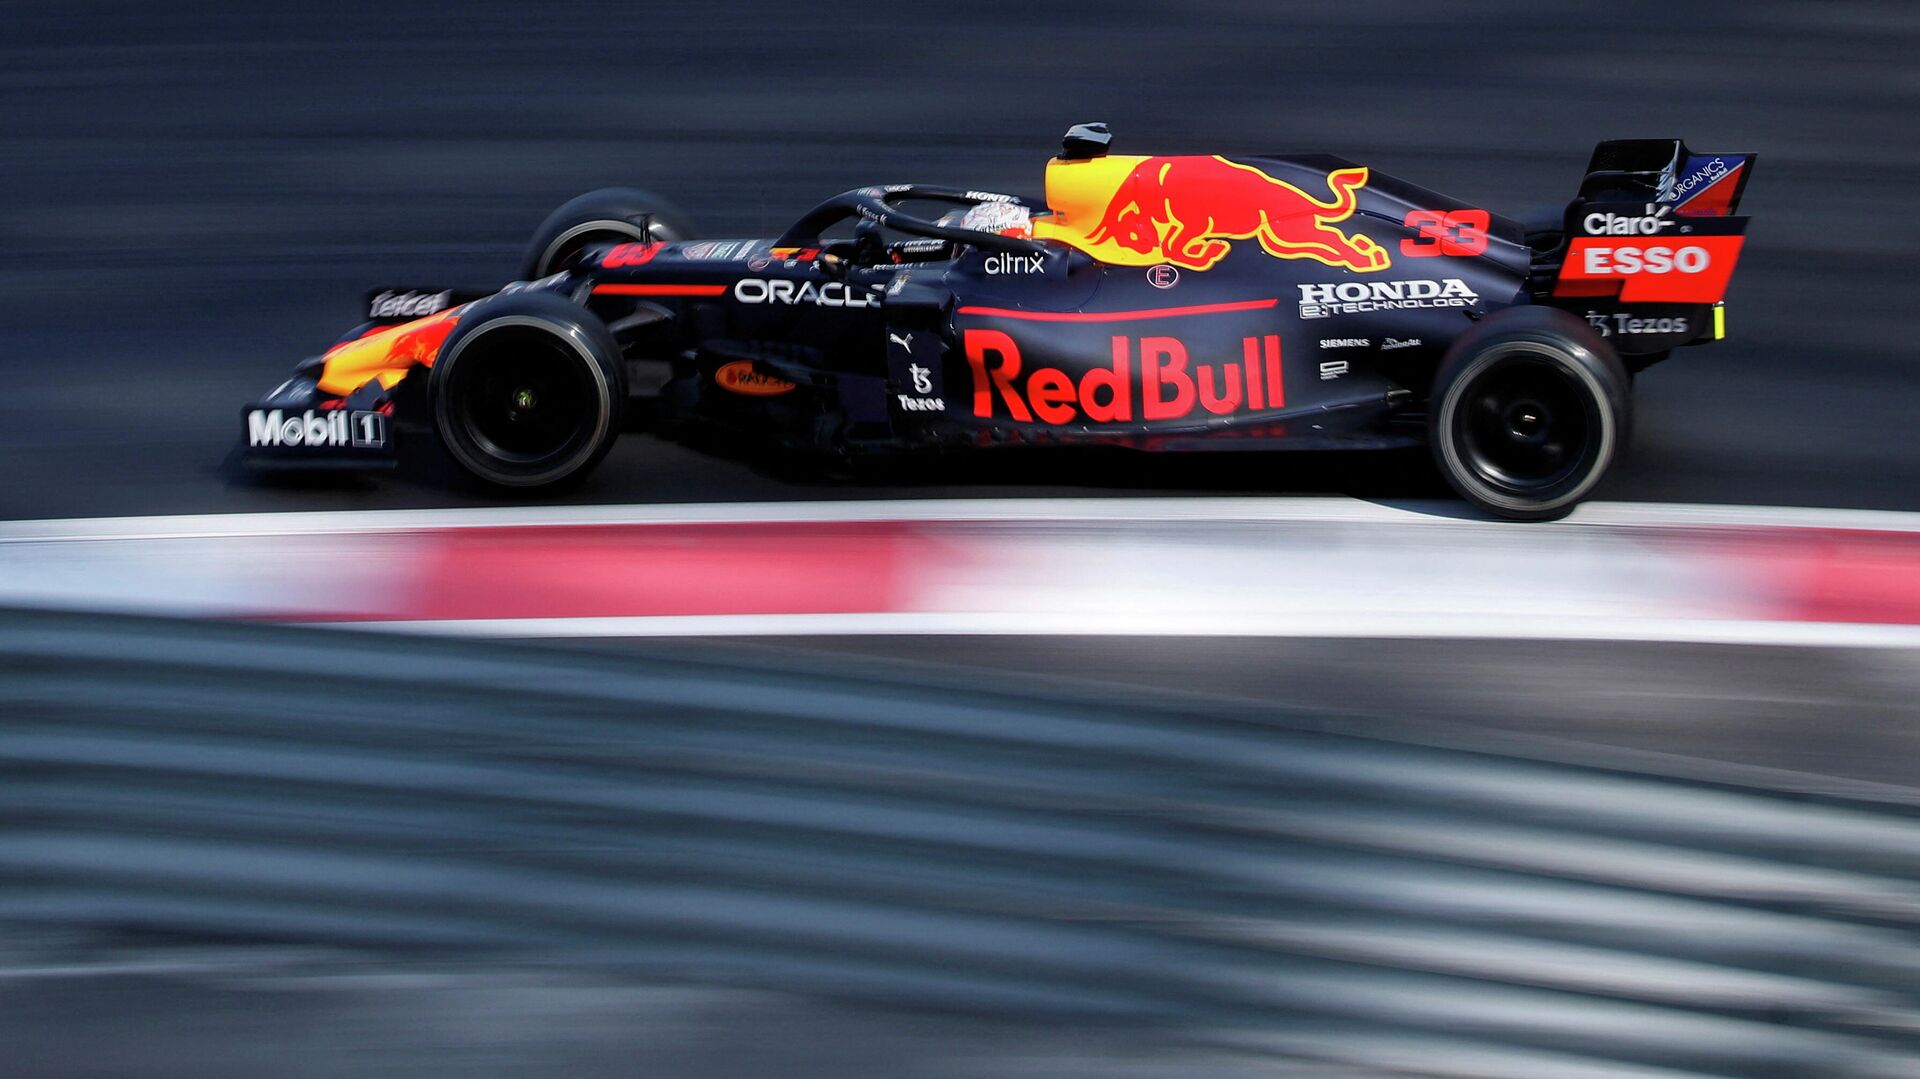 "Формула-1" проведет три спринт-квалификации в 2022 году